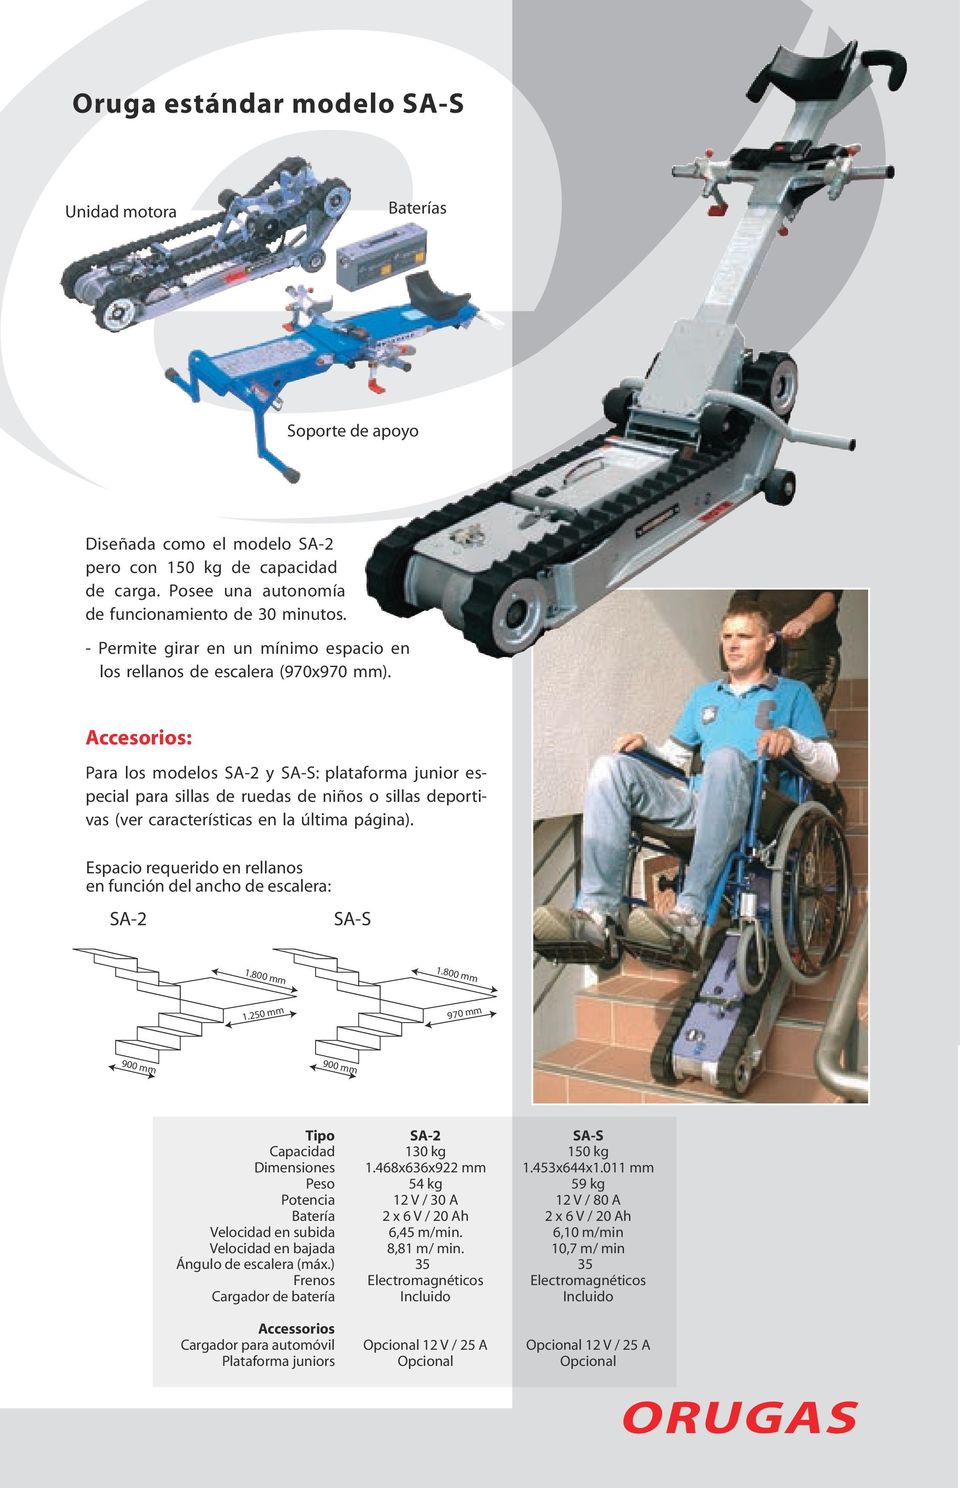 Accesorios: Para los modelos SA-2 y SA-S: plataforma junior especial para sillas de ruedas de niños o sillas deportivas (ver características en la última página).